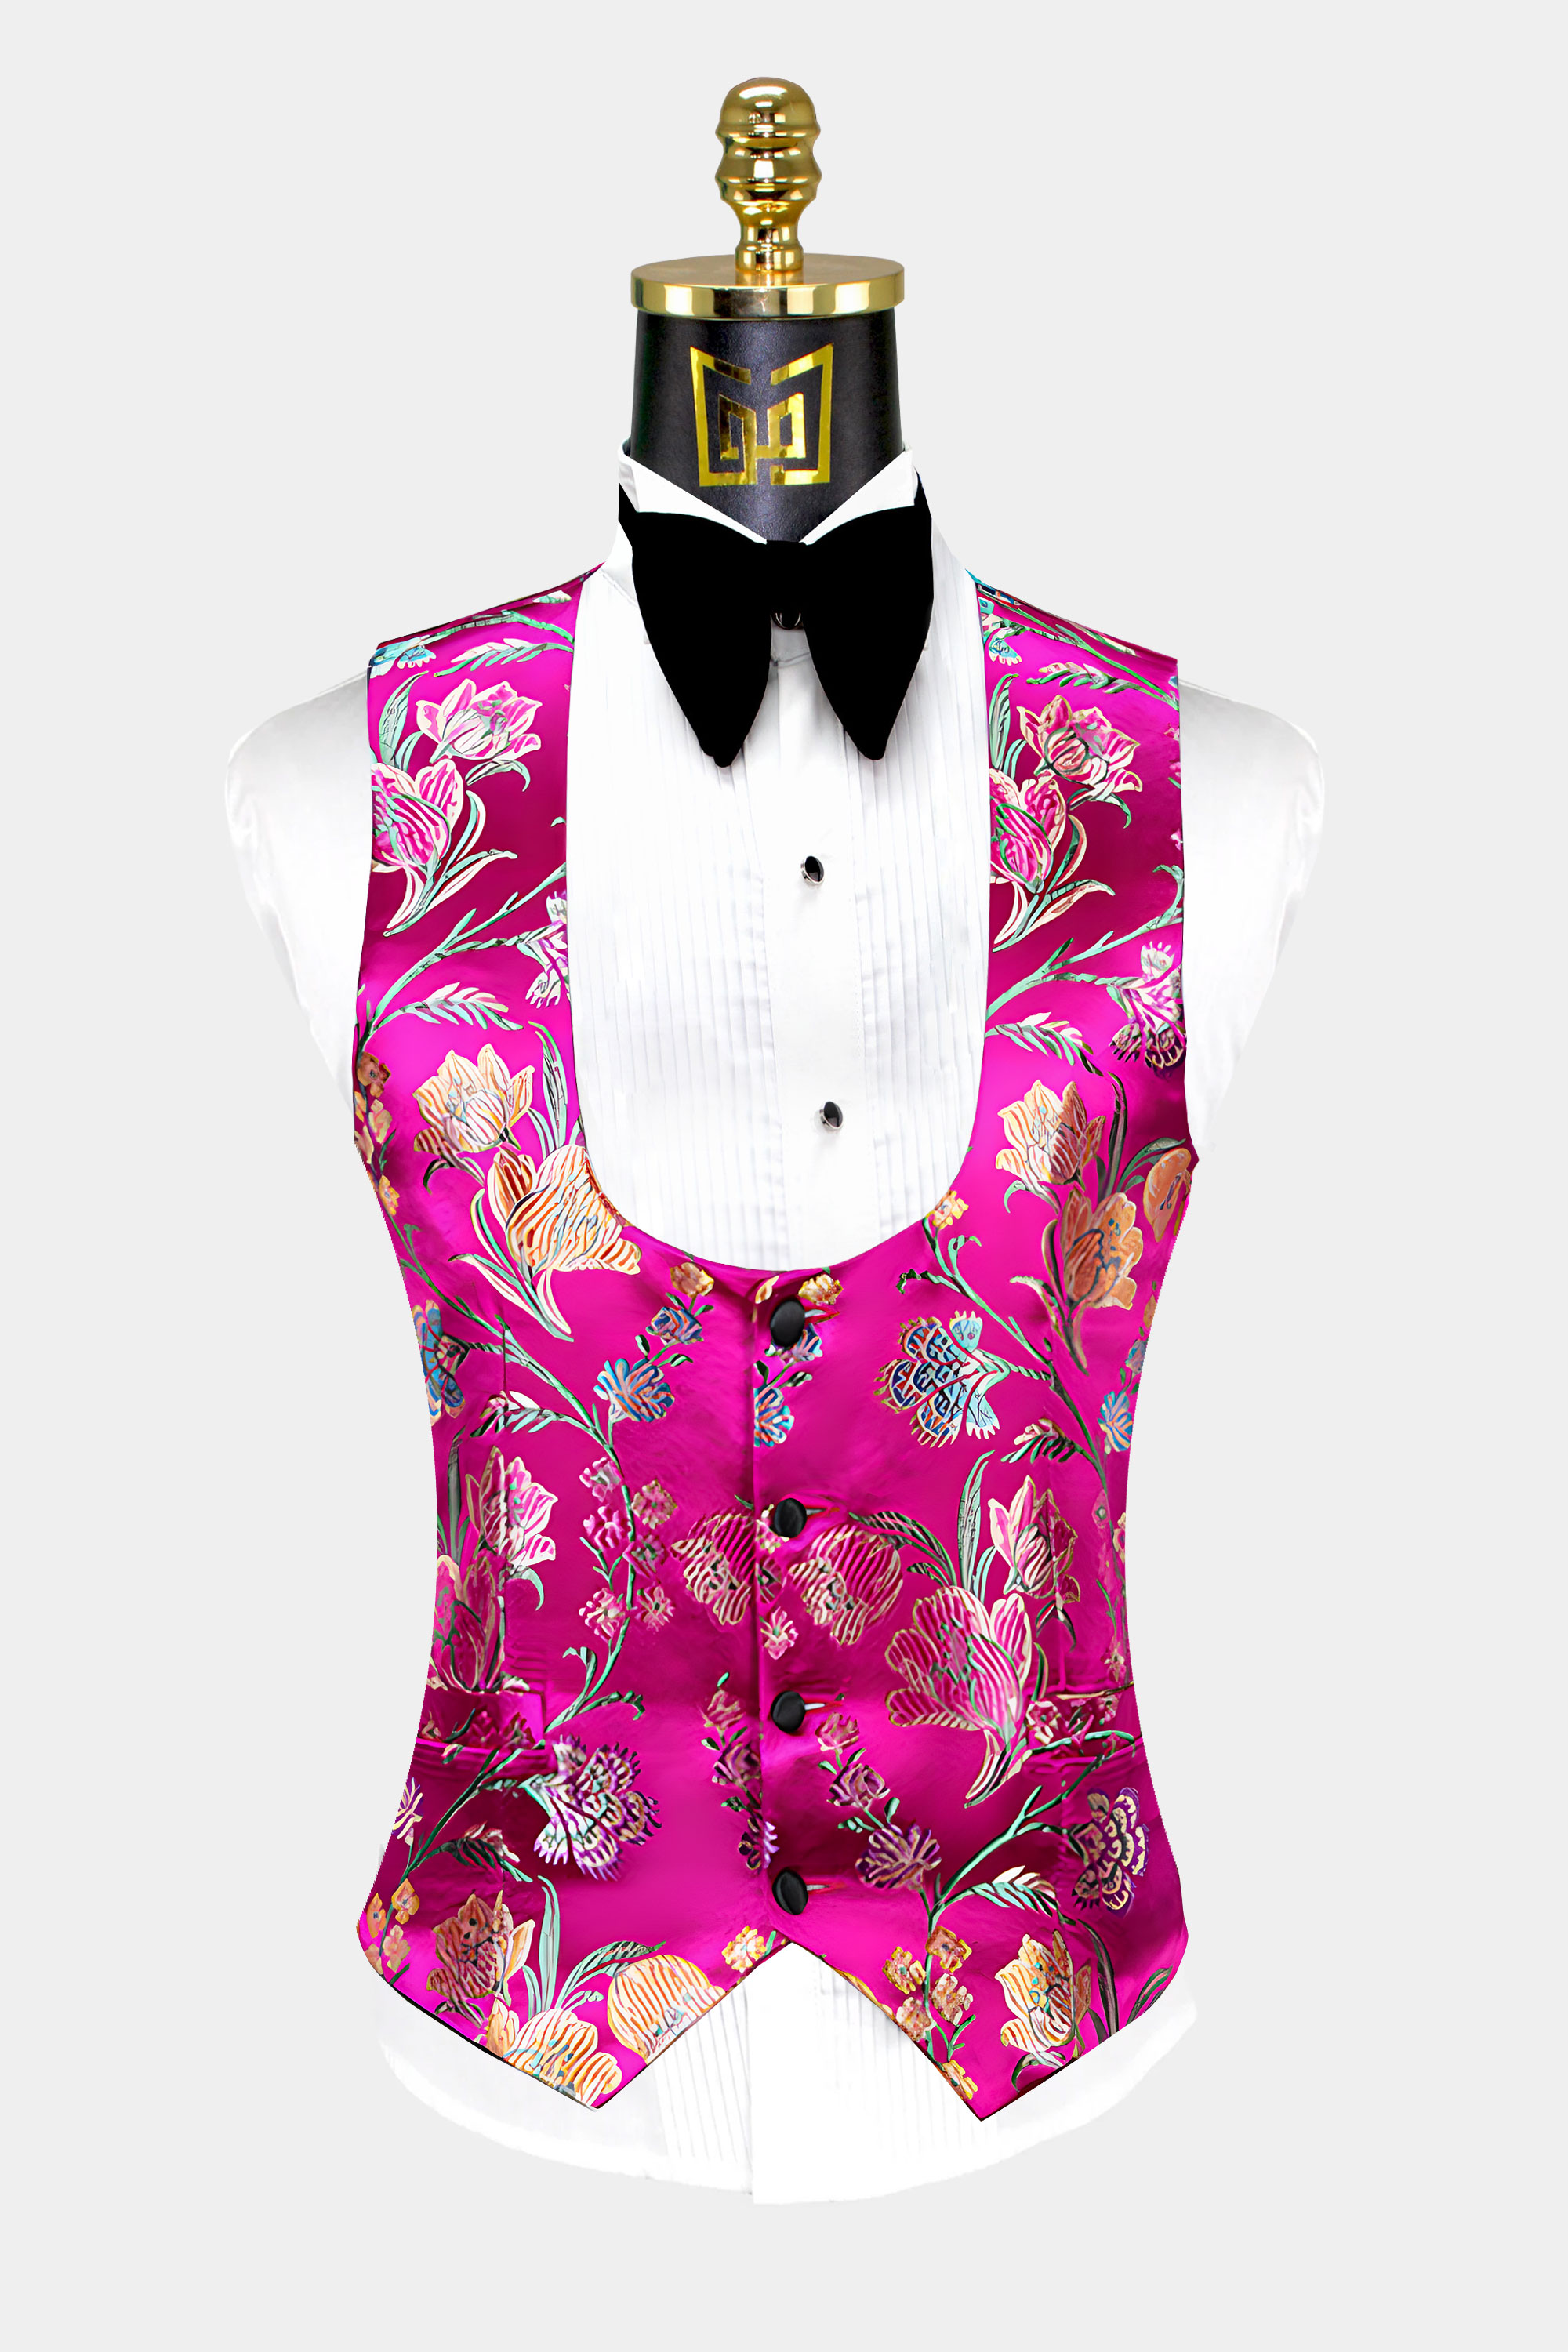 Hot-Pink-Tuxedo-Vest-from-Gentlemansguru.com